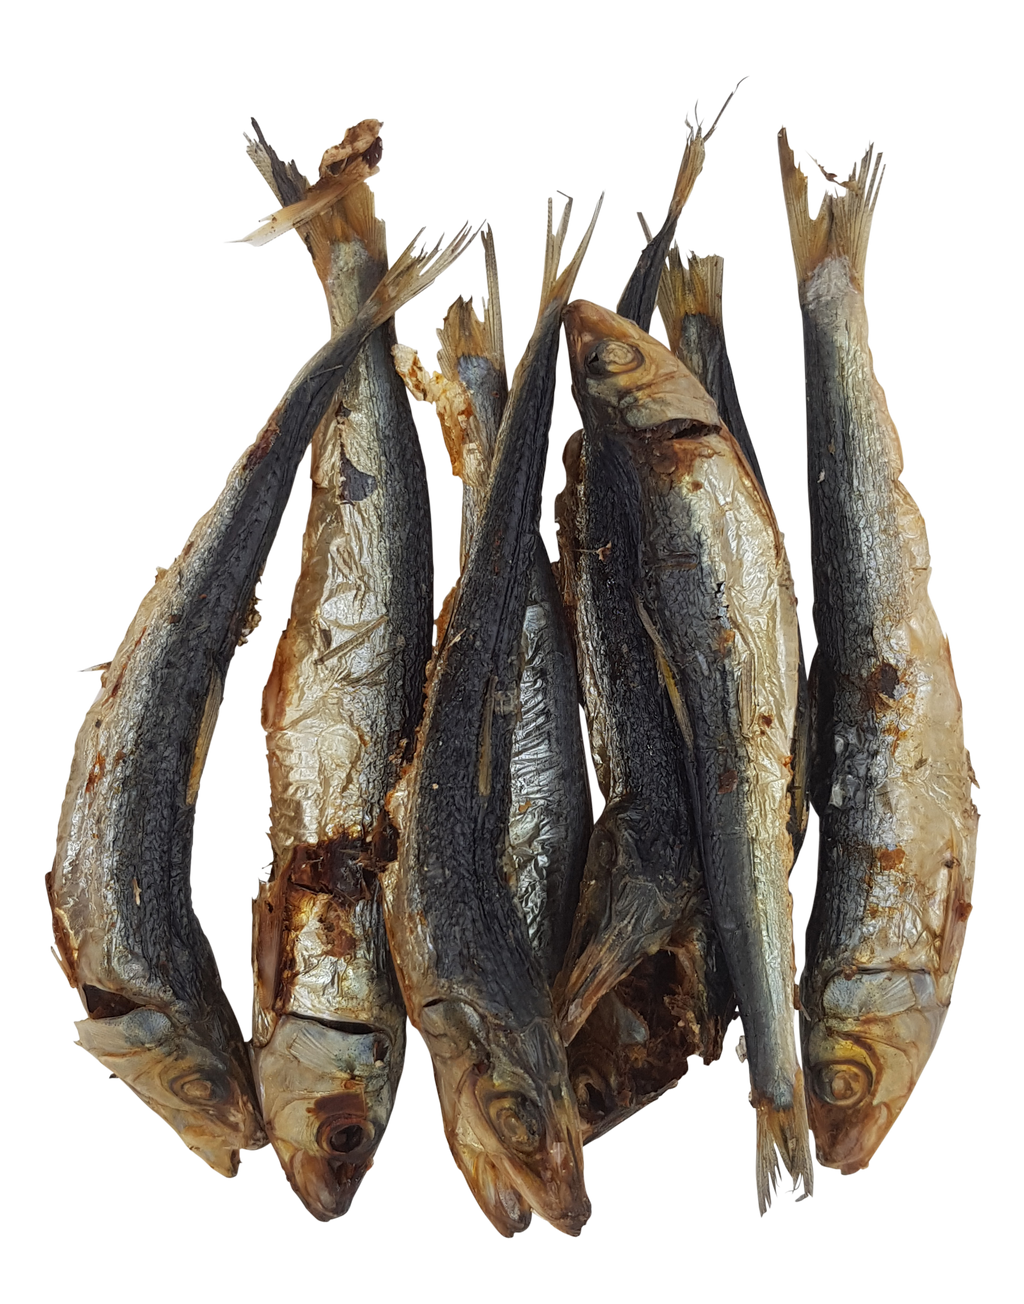 Treats - Sardines